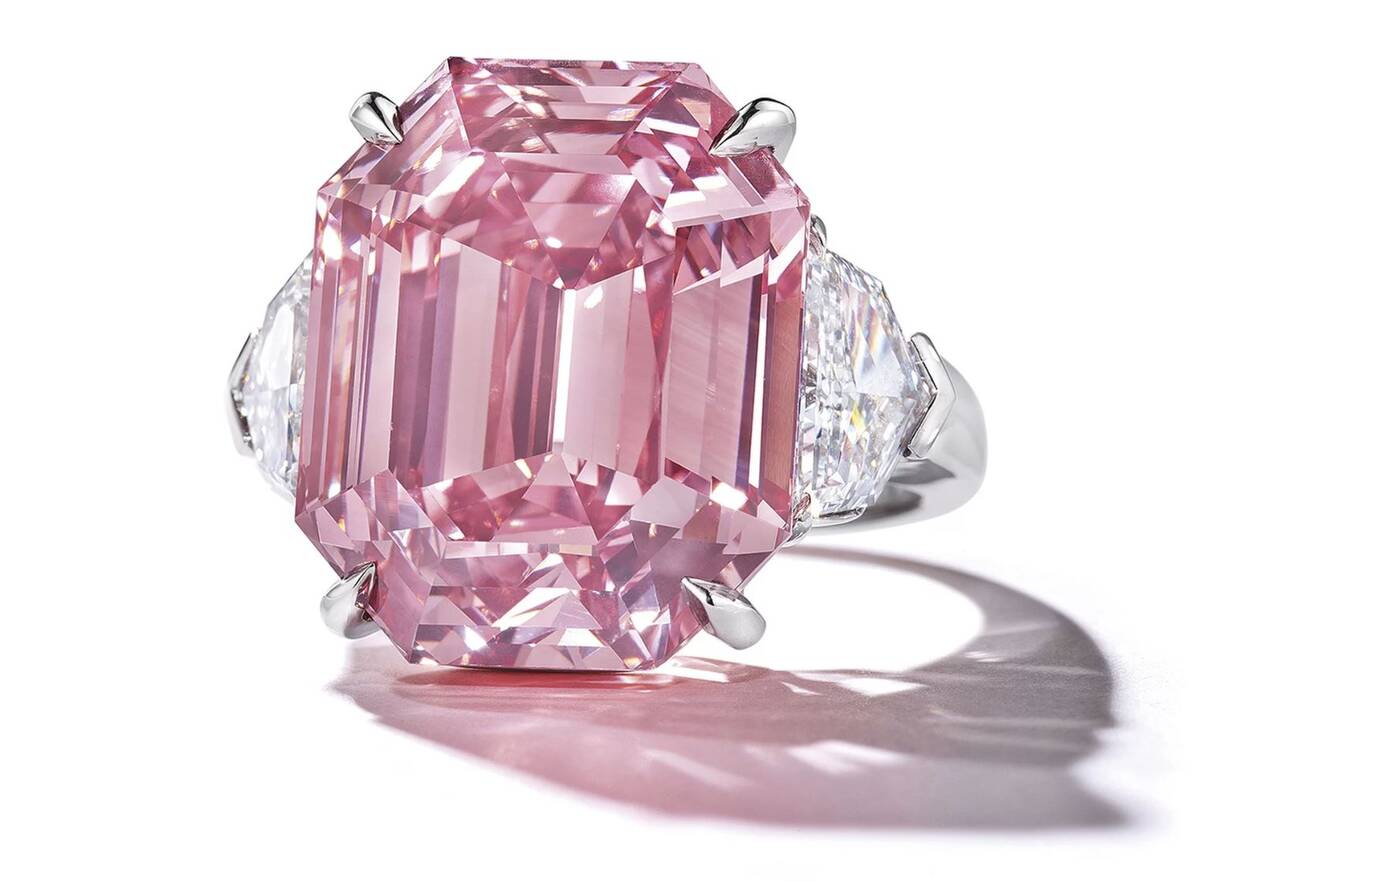 diament, różowy diament, ogromny diament, aukcja diamentu